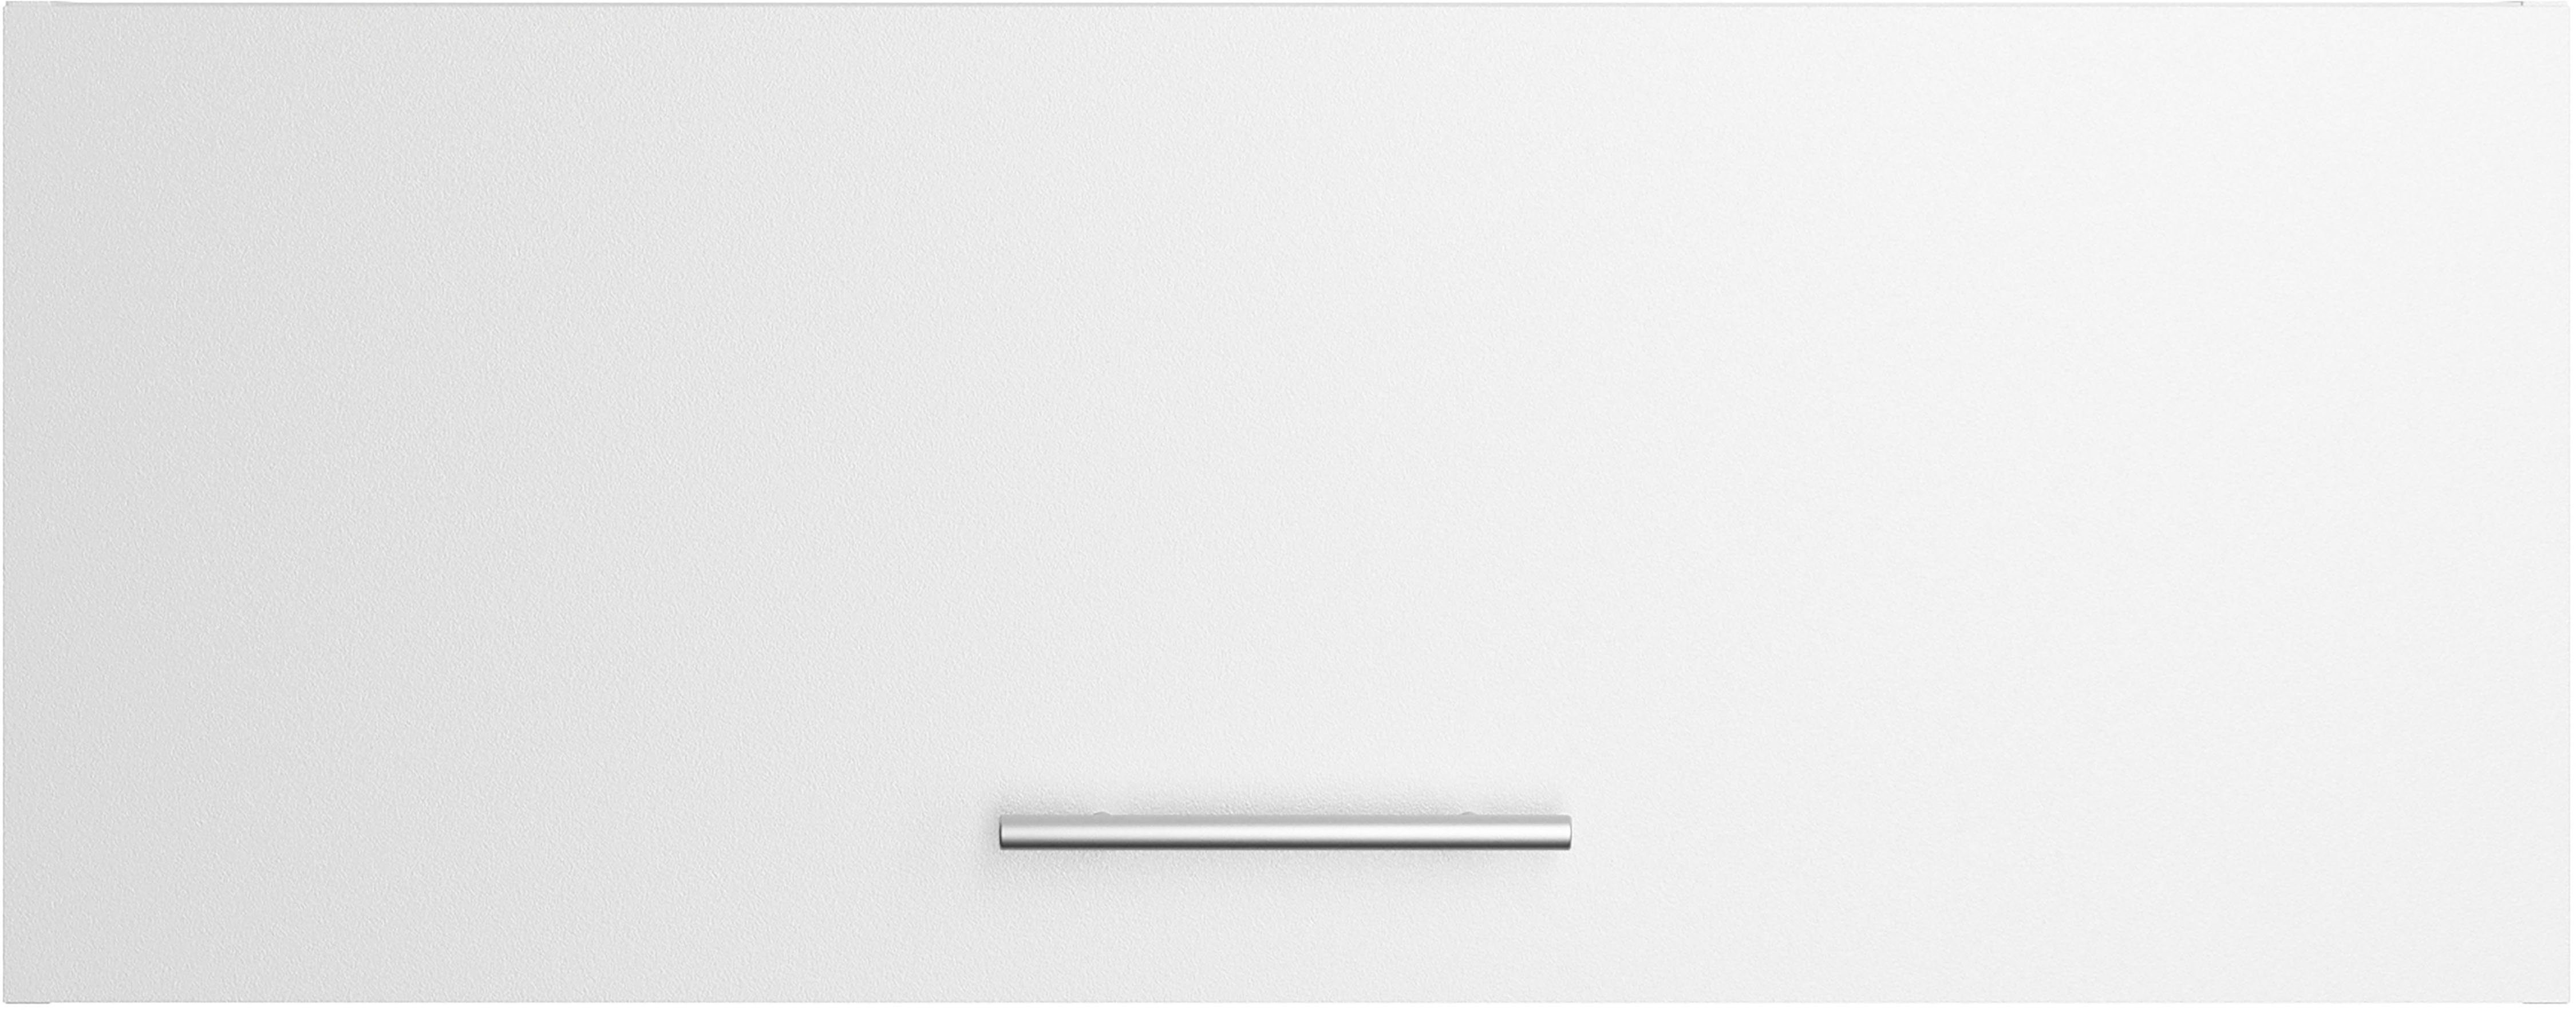 OPTIFIT Klara Klapphängeschrank 90 cm Breite weiß | weiß